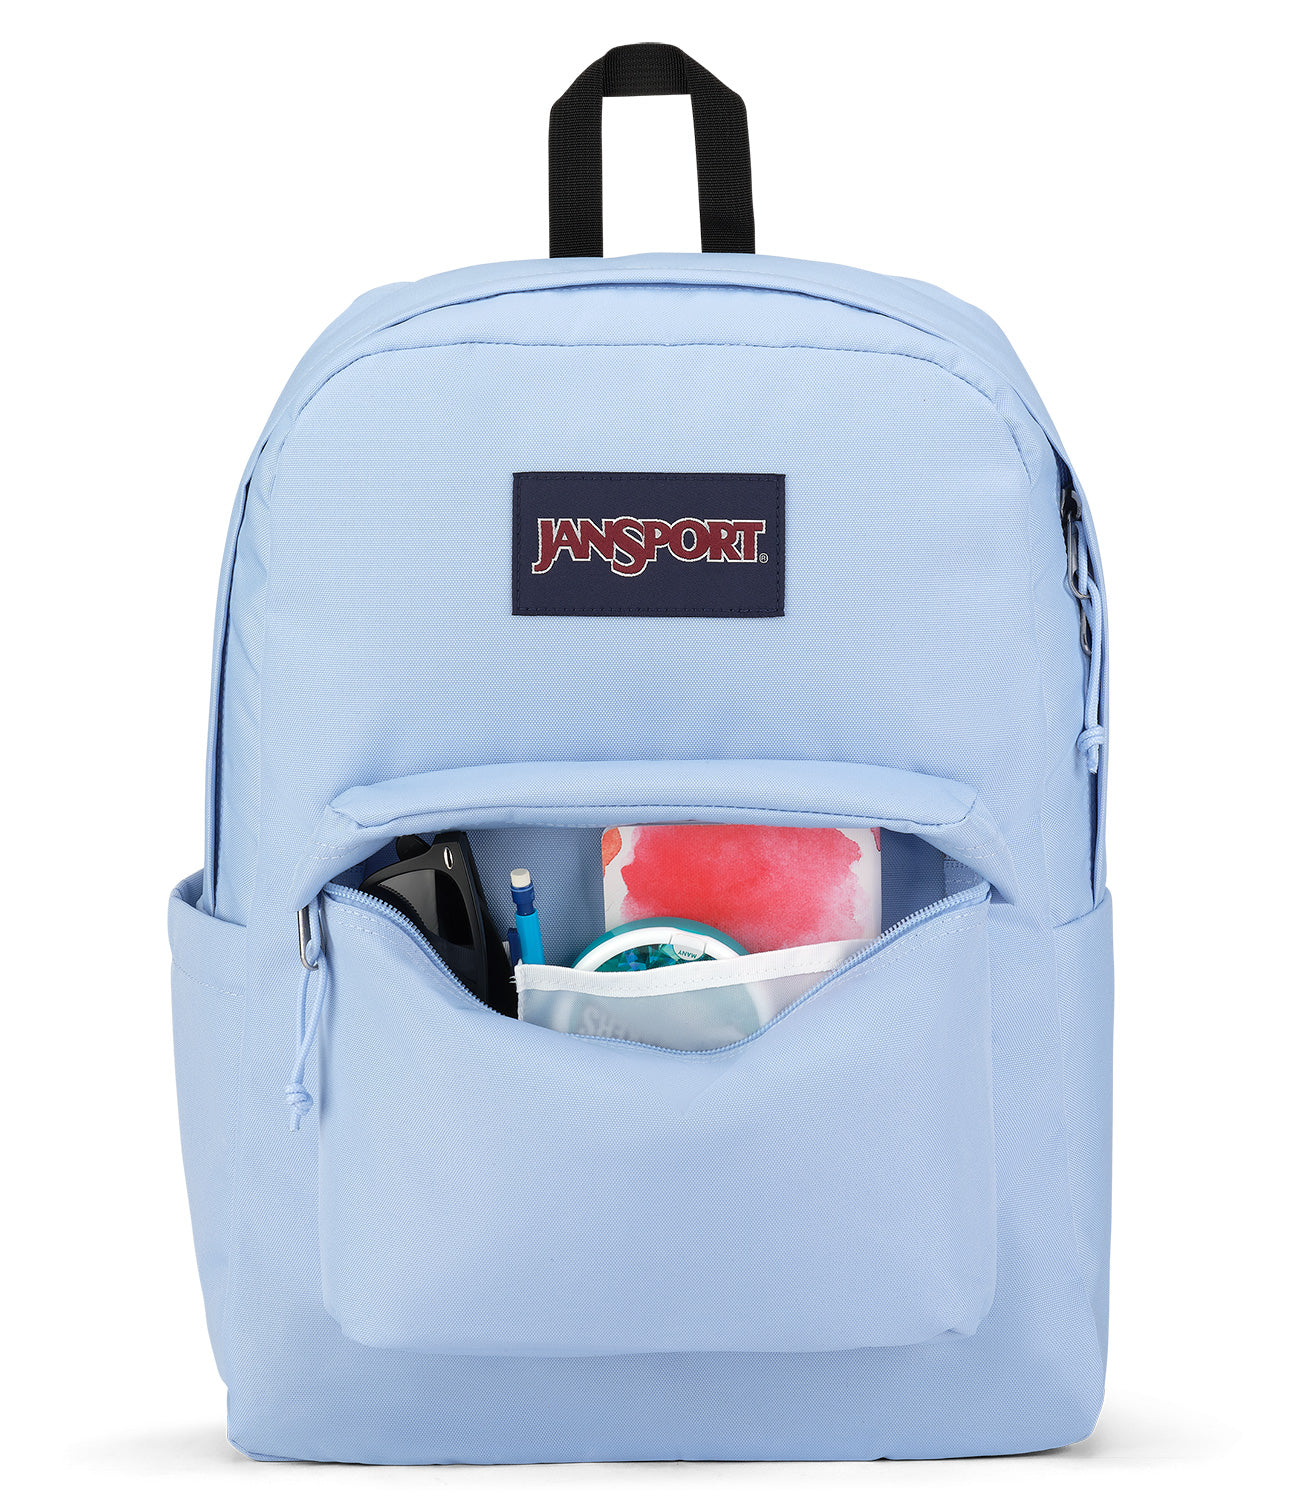 Jansport Backpack Superbreak Blue Dusk 26Litre front inside pocket